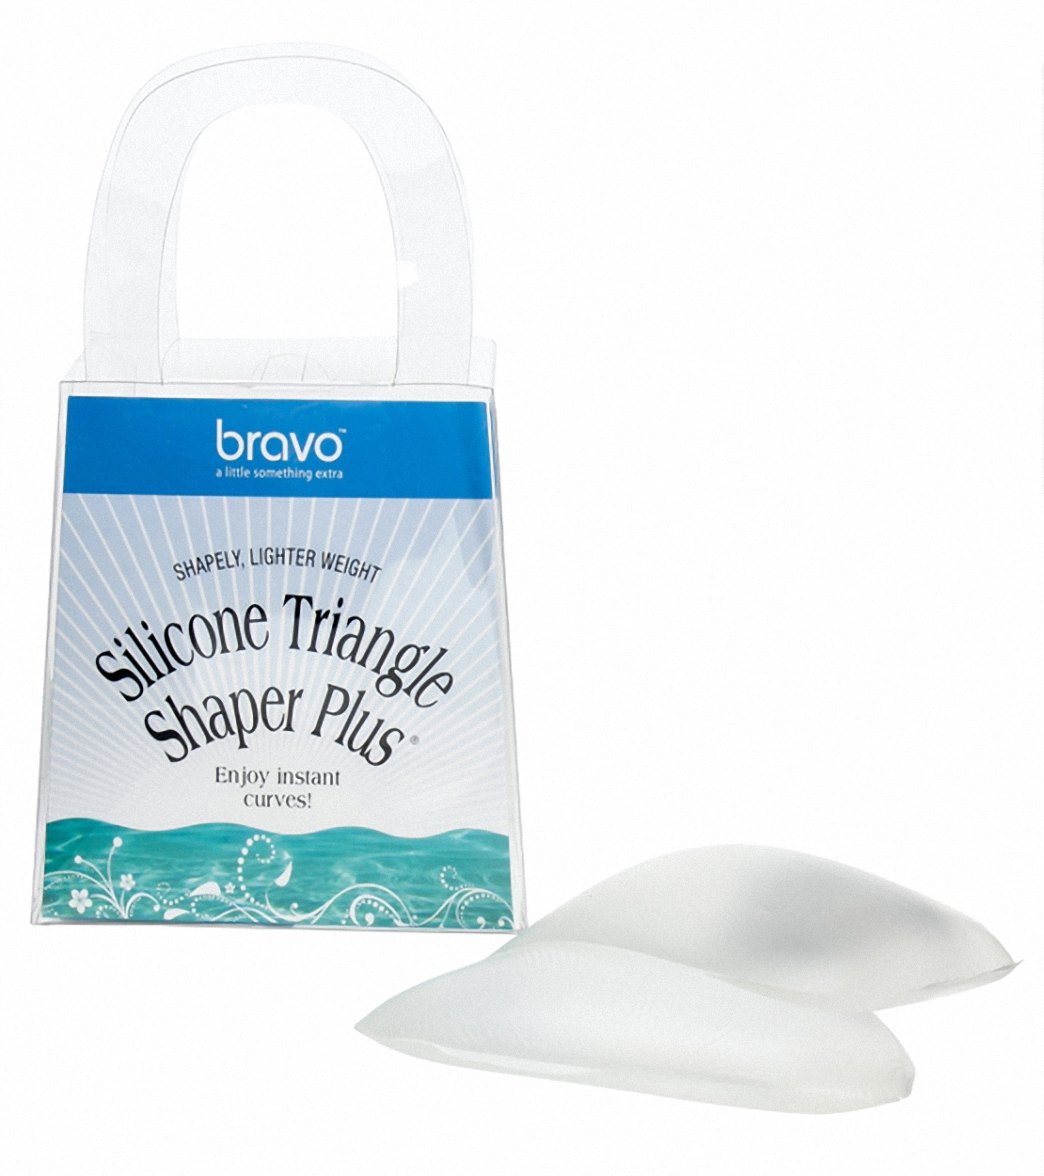 Bravo Clear Silicone Triangle Bikini Top Shaper Plus